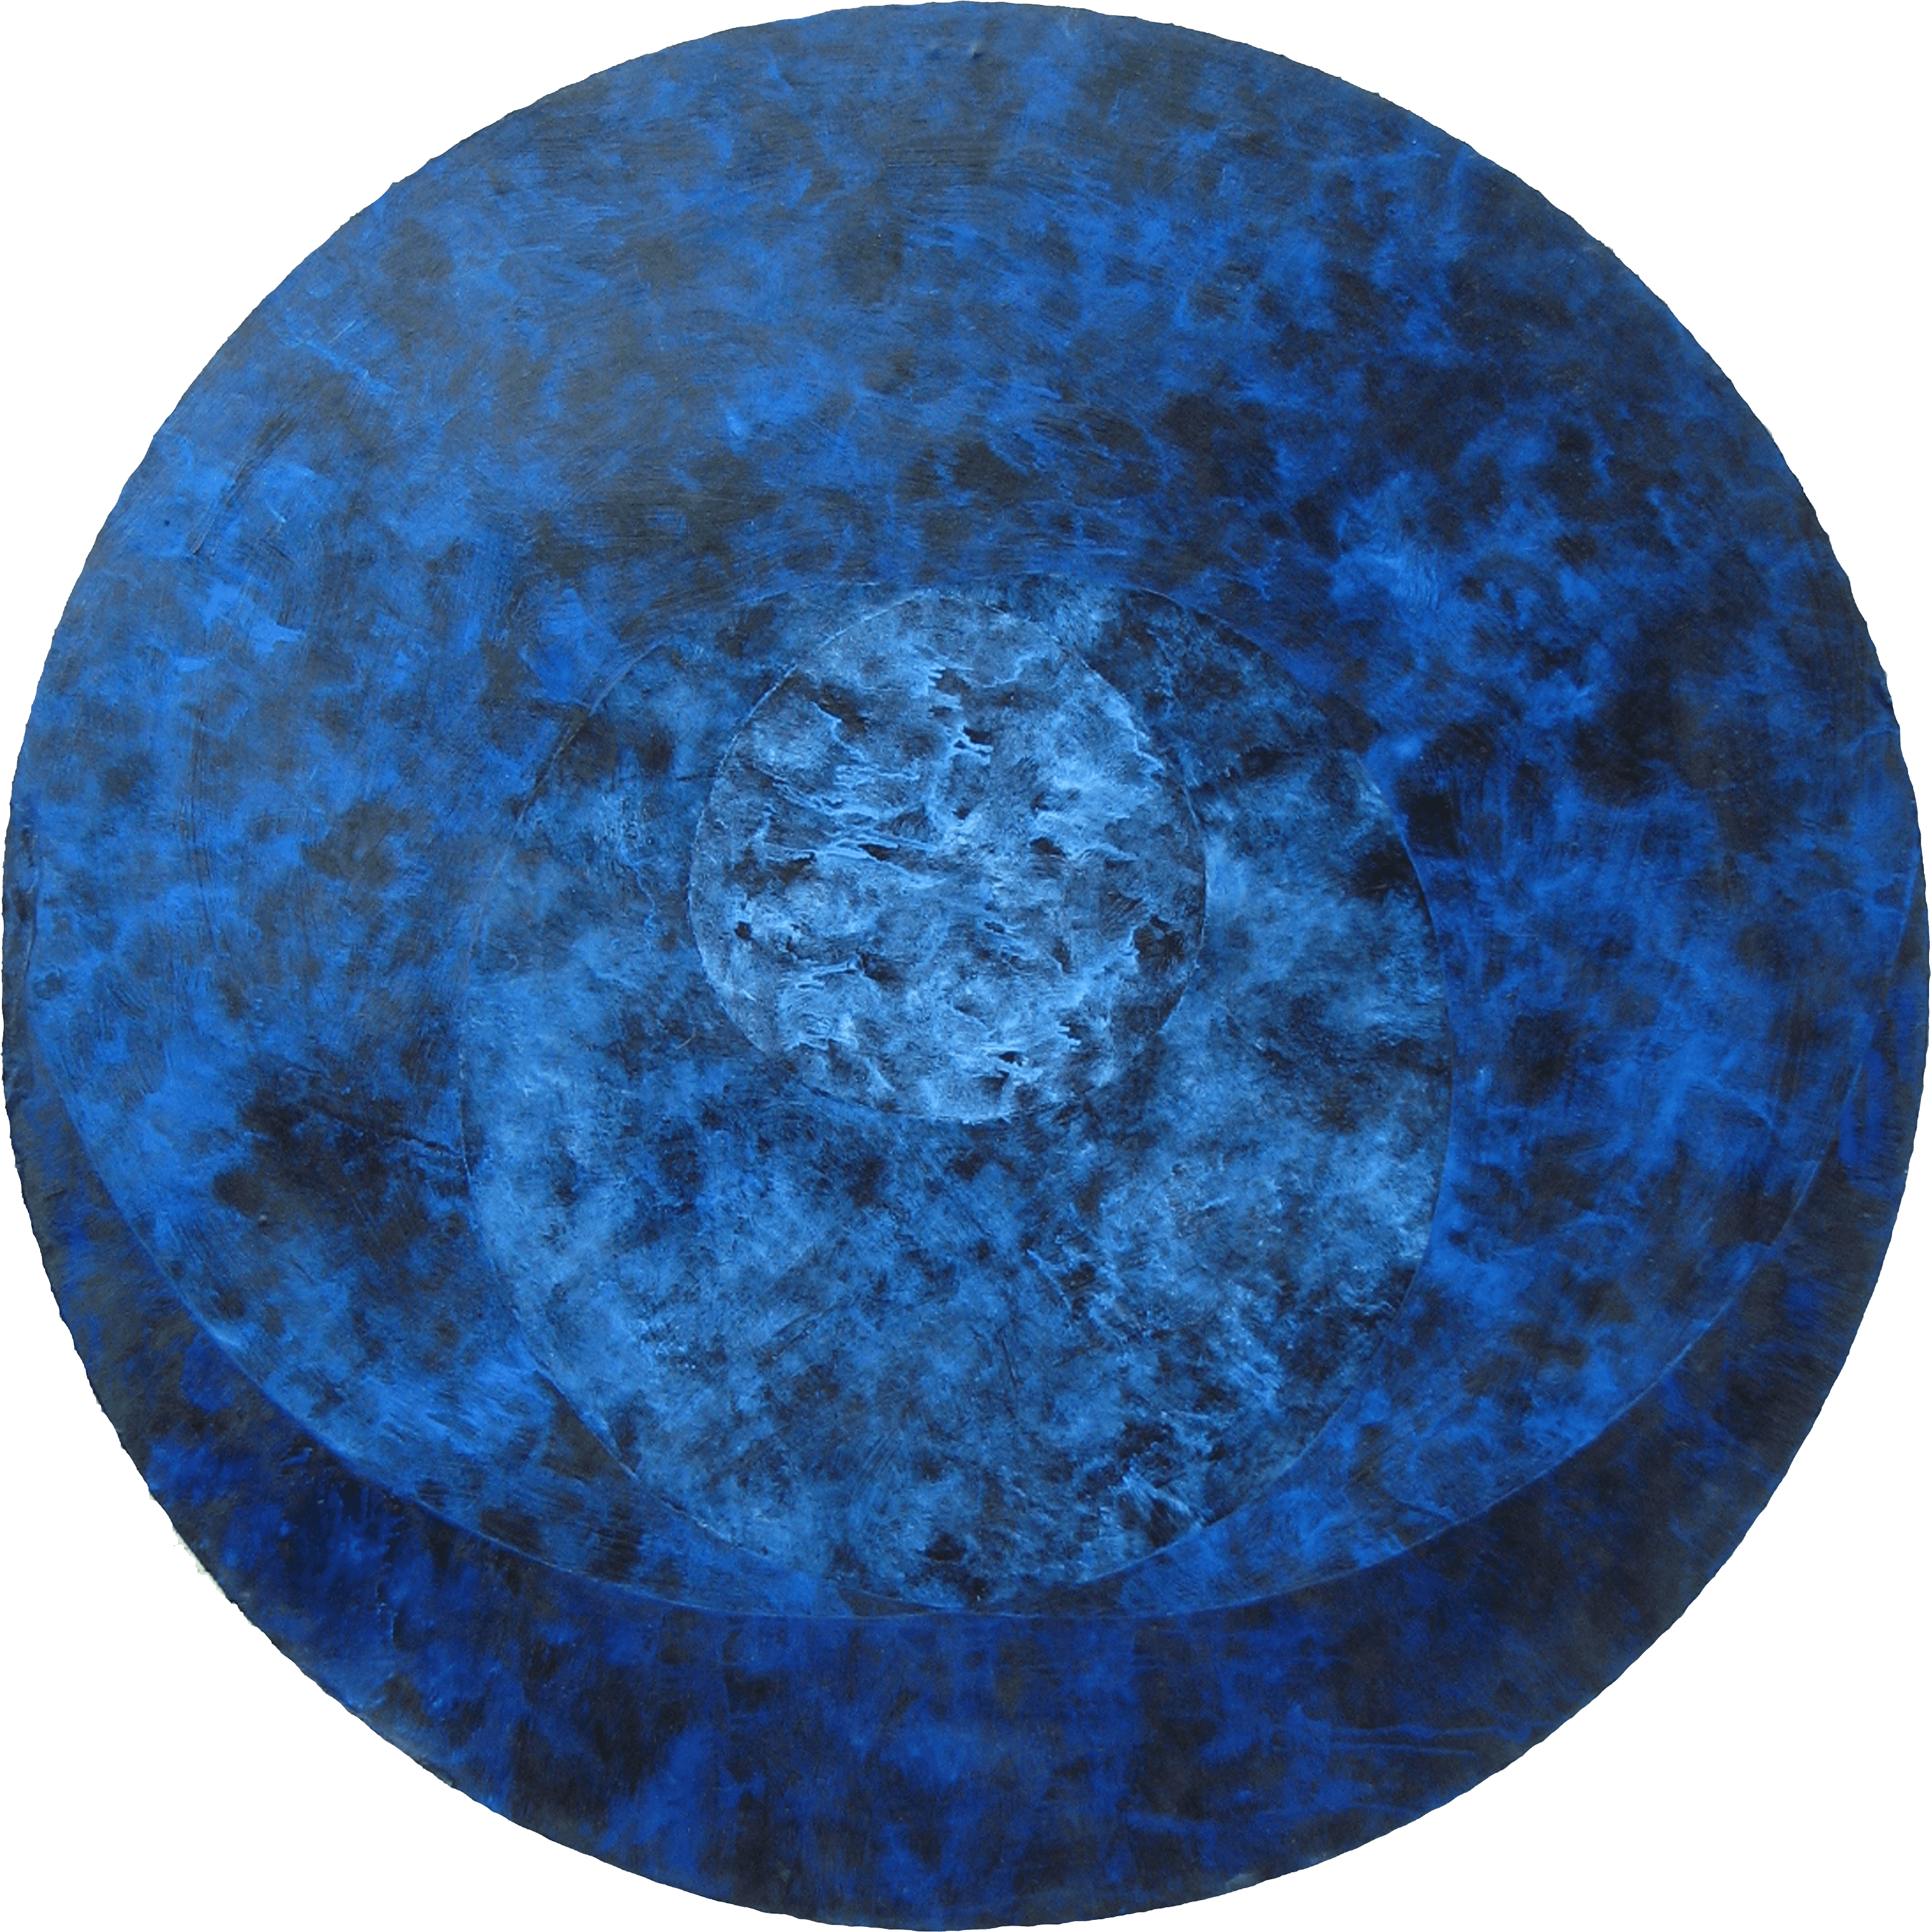 Le Grand Bleu, 2002, oil on wood, diameter 120 cm